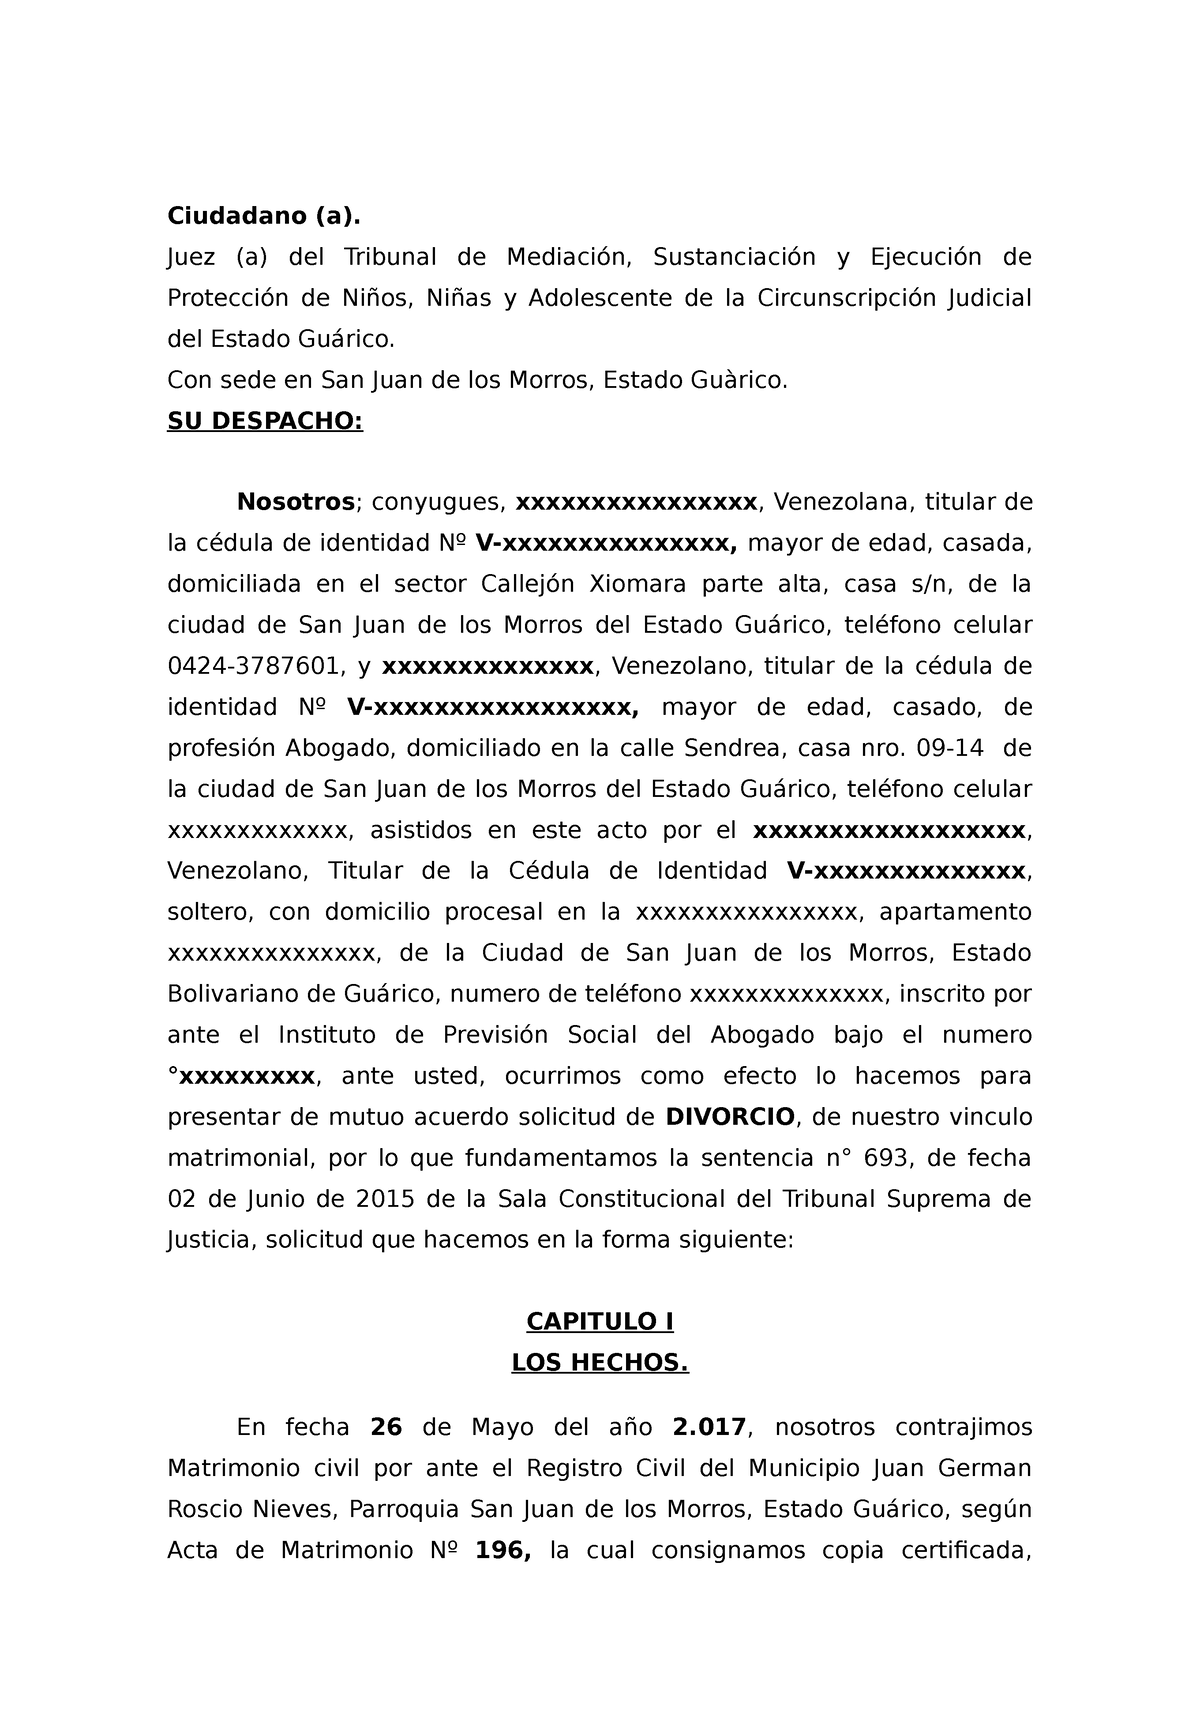 Divorcio sinhijos - Ciudadano (a). Juez (a) del Tribunal de Mediación ...